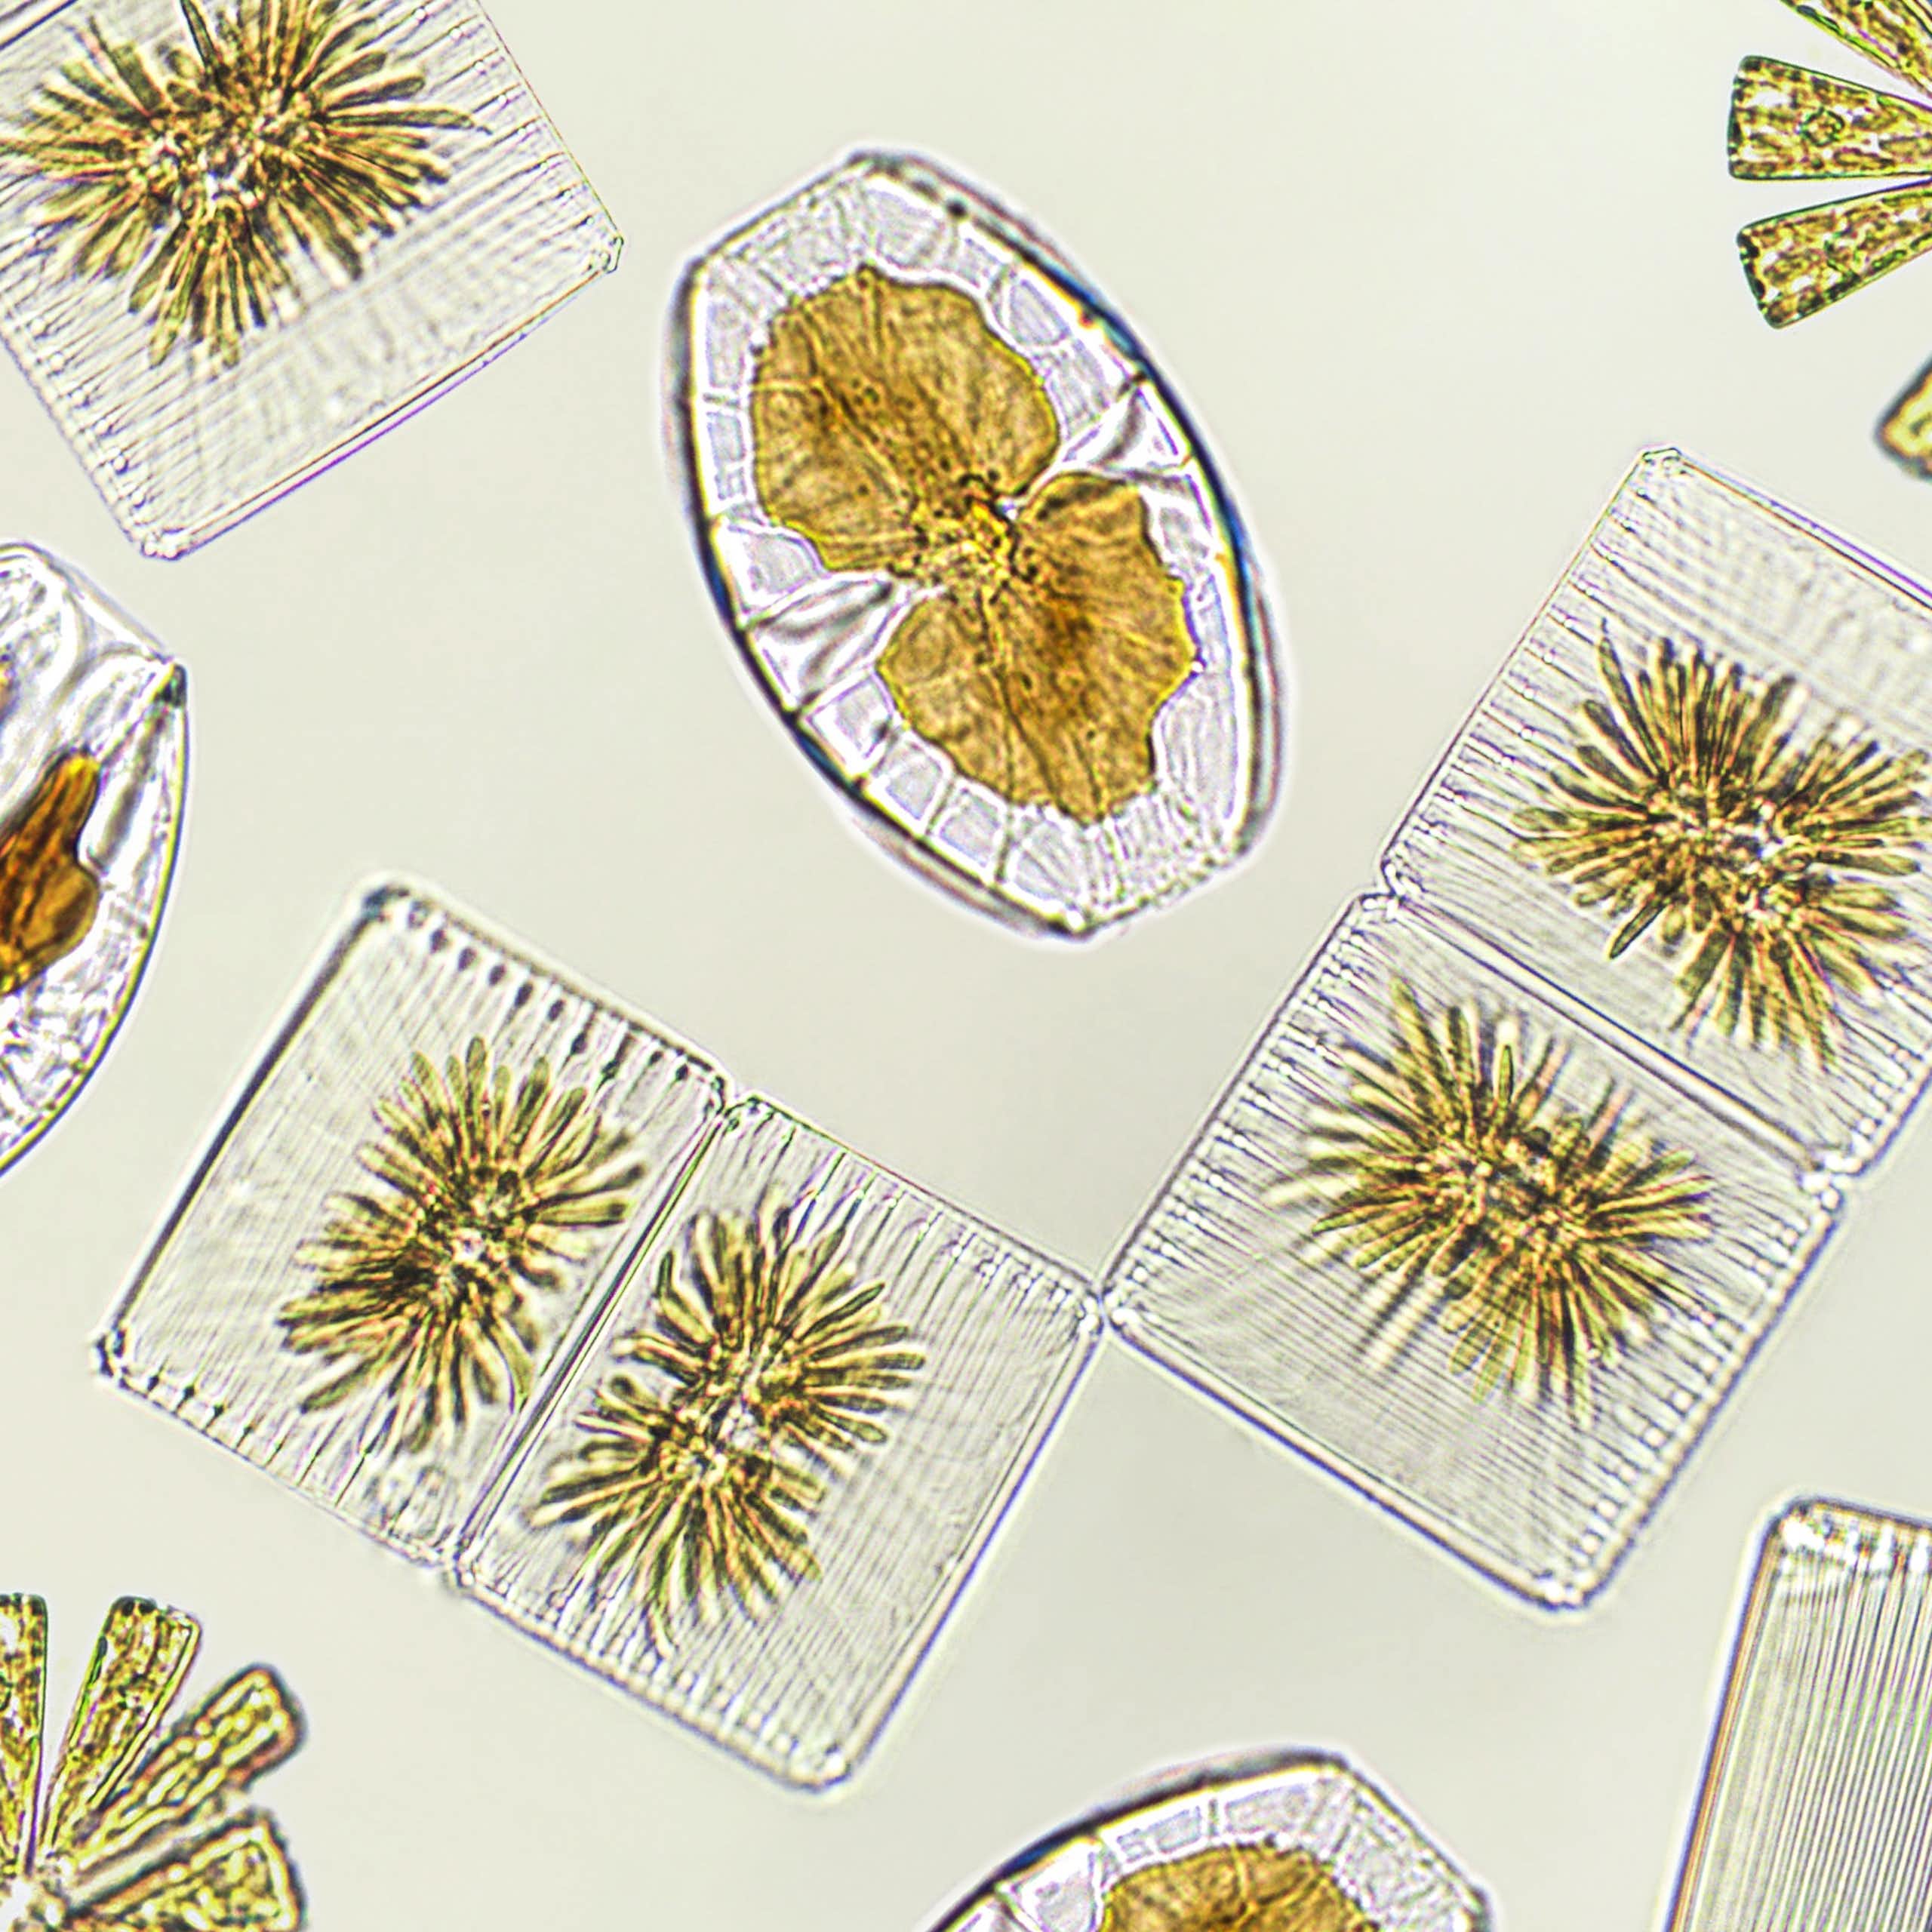 Los bosques de diatomeas guardan secretos de hace millones de años